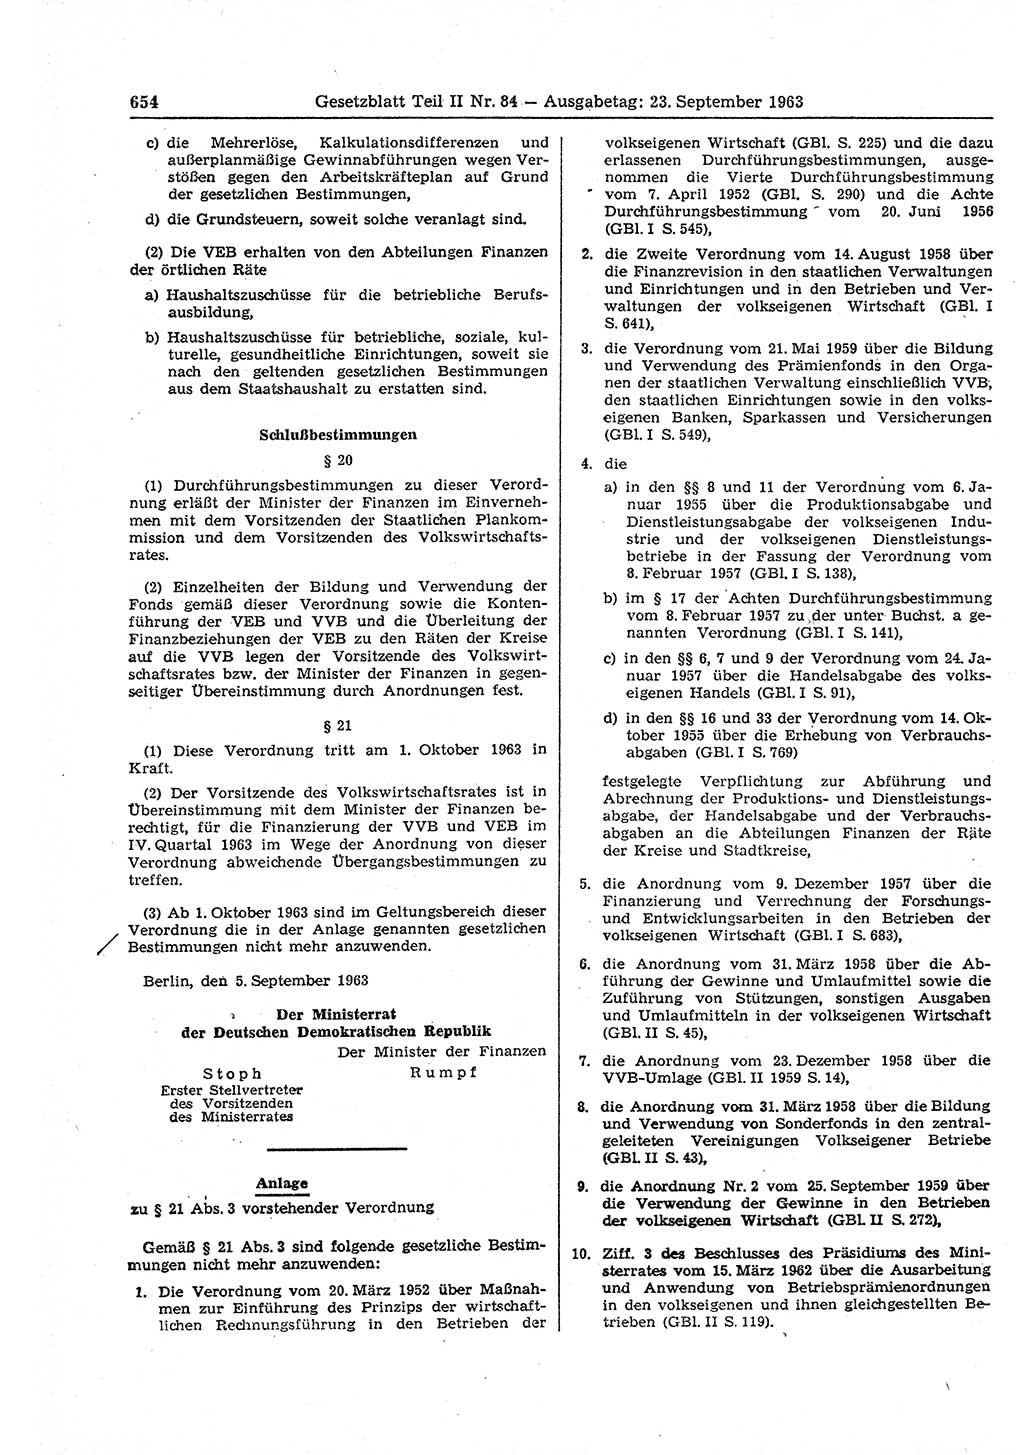 Gesetzblatt (GBl.) der Deutschen Demokratischen Republik (DDR) Teil ⅠⅠ 1963, Seite 654 (GBl. DDR ⅠⅠ 1963, S. 654)